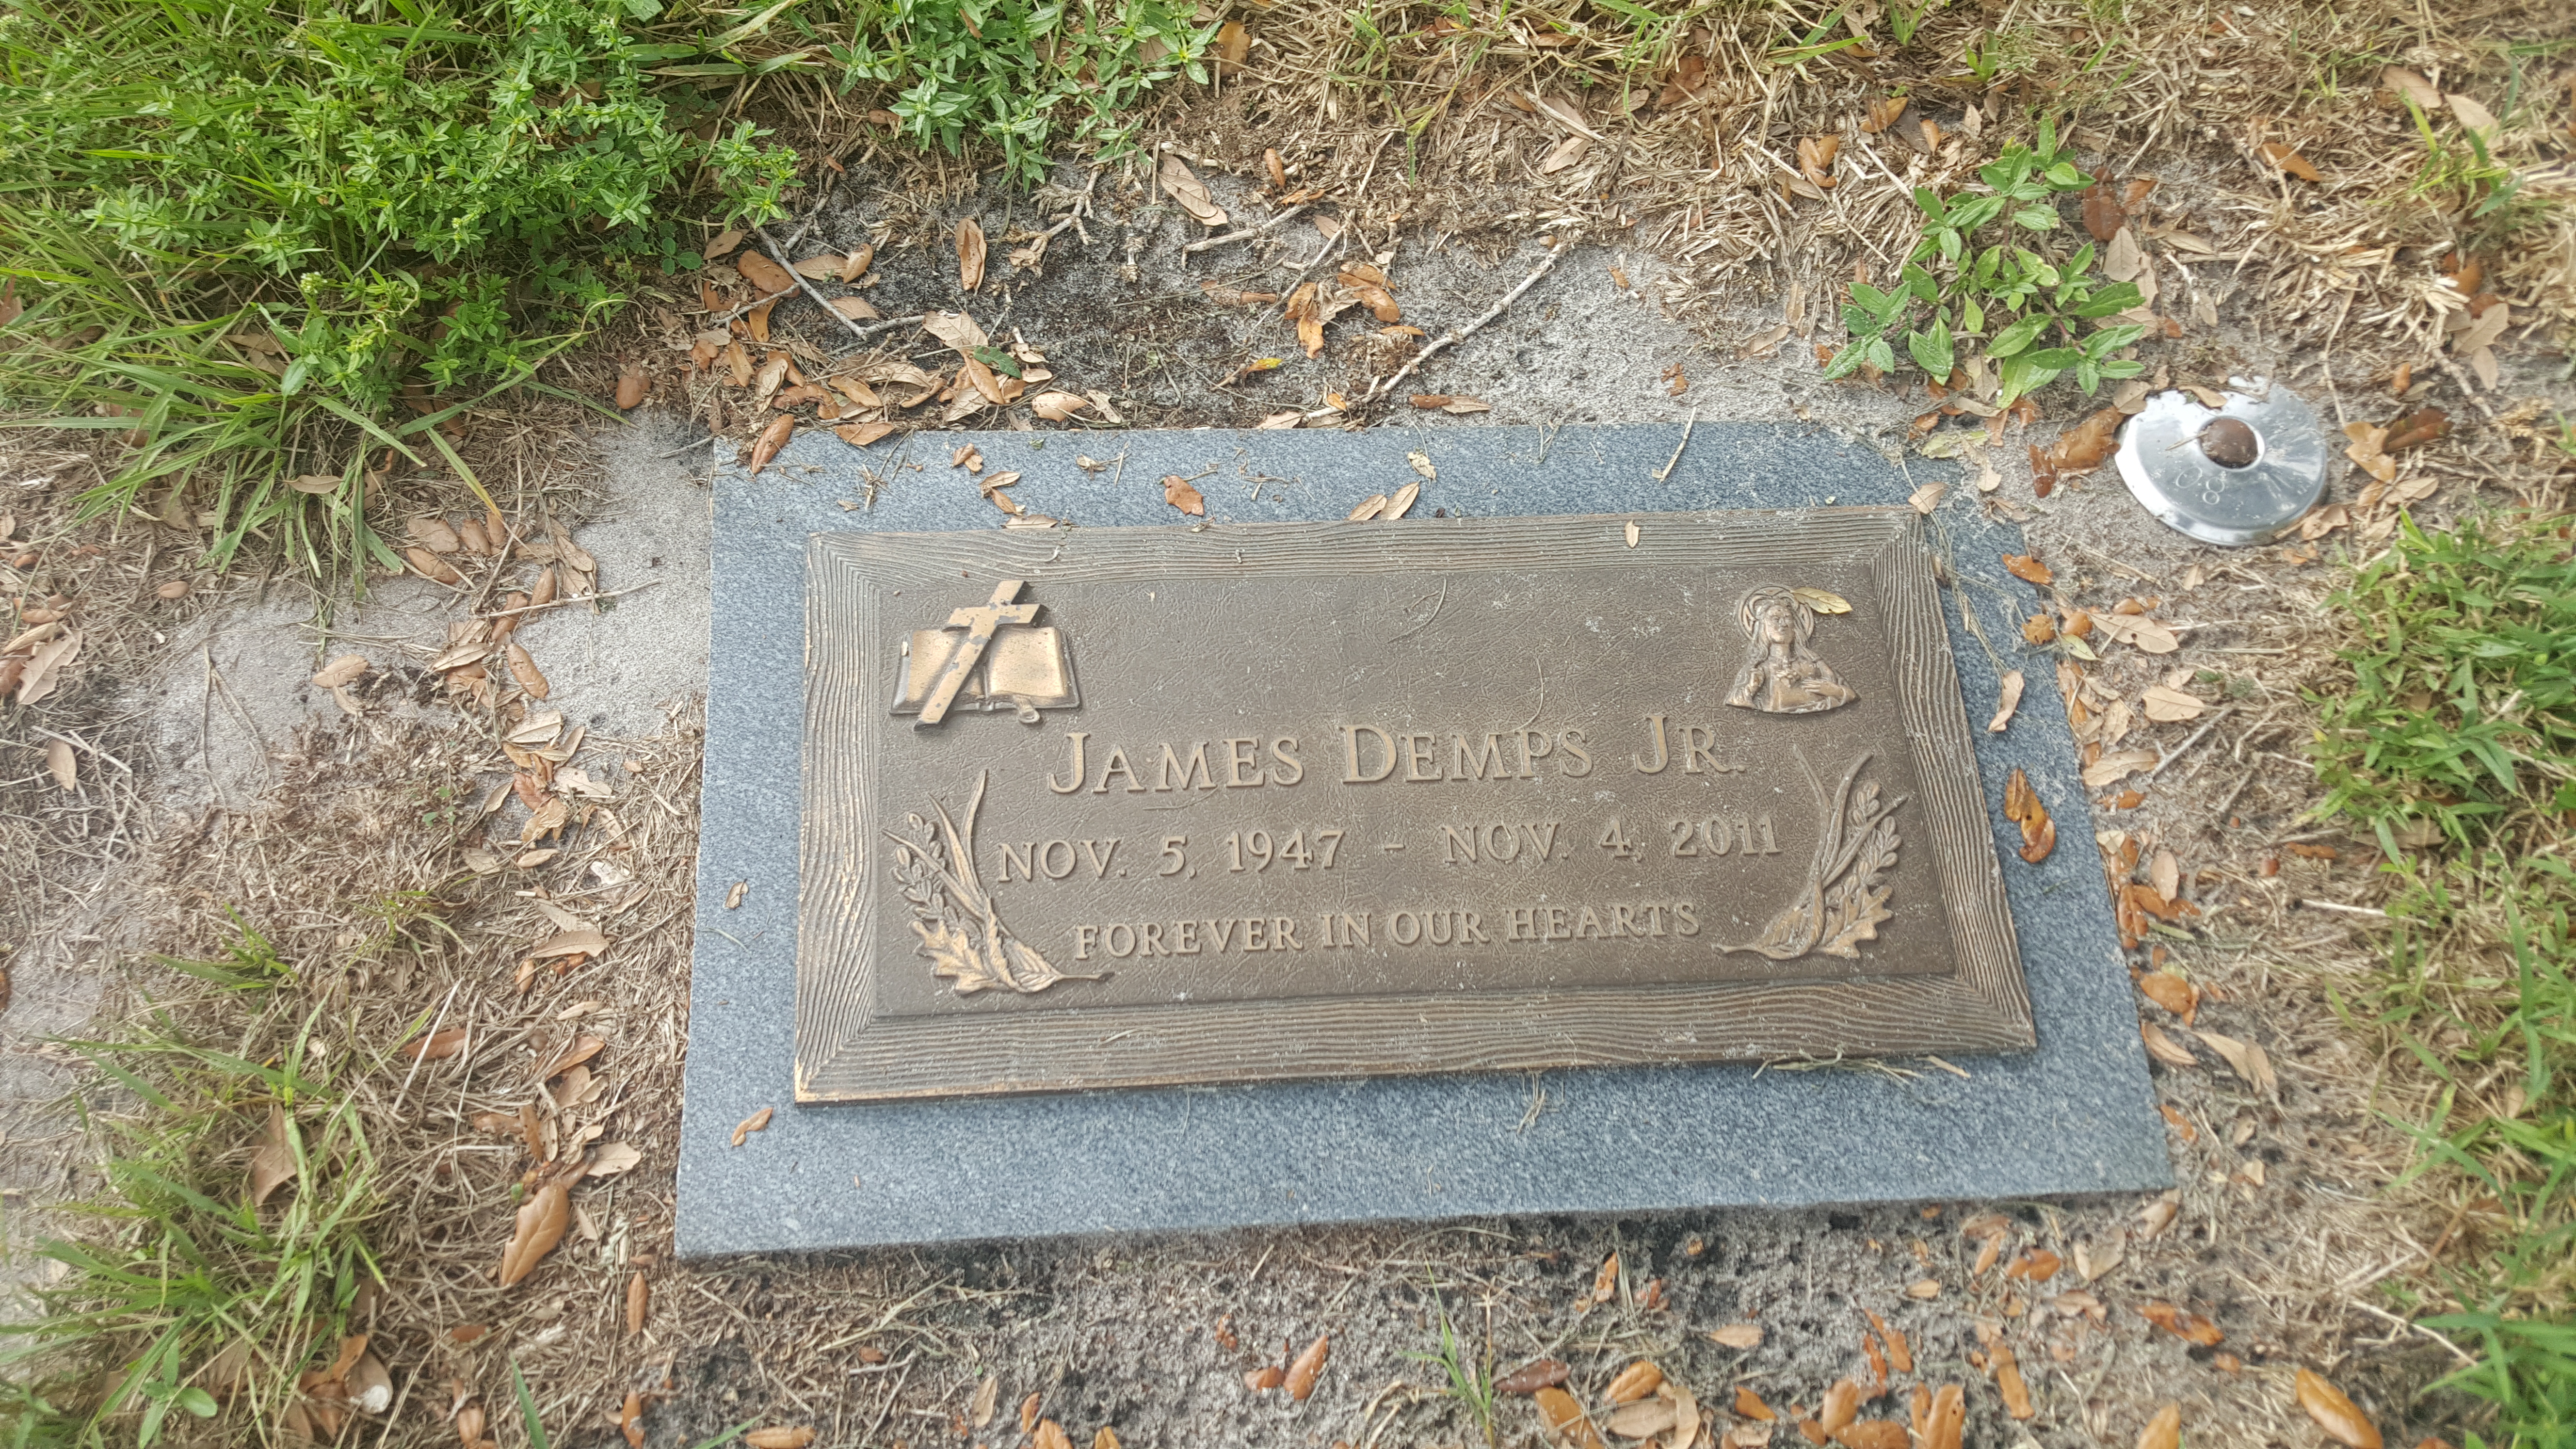 James Demps, Jr